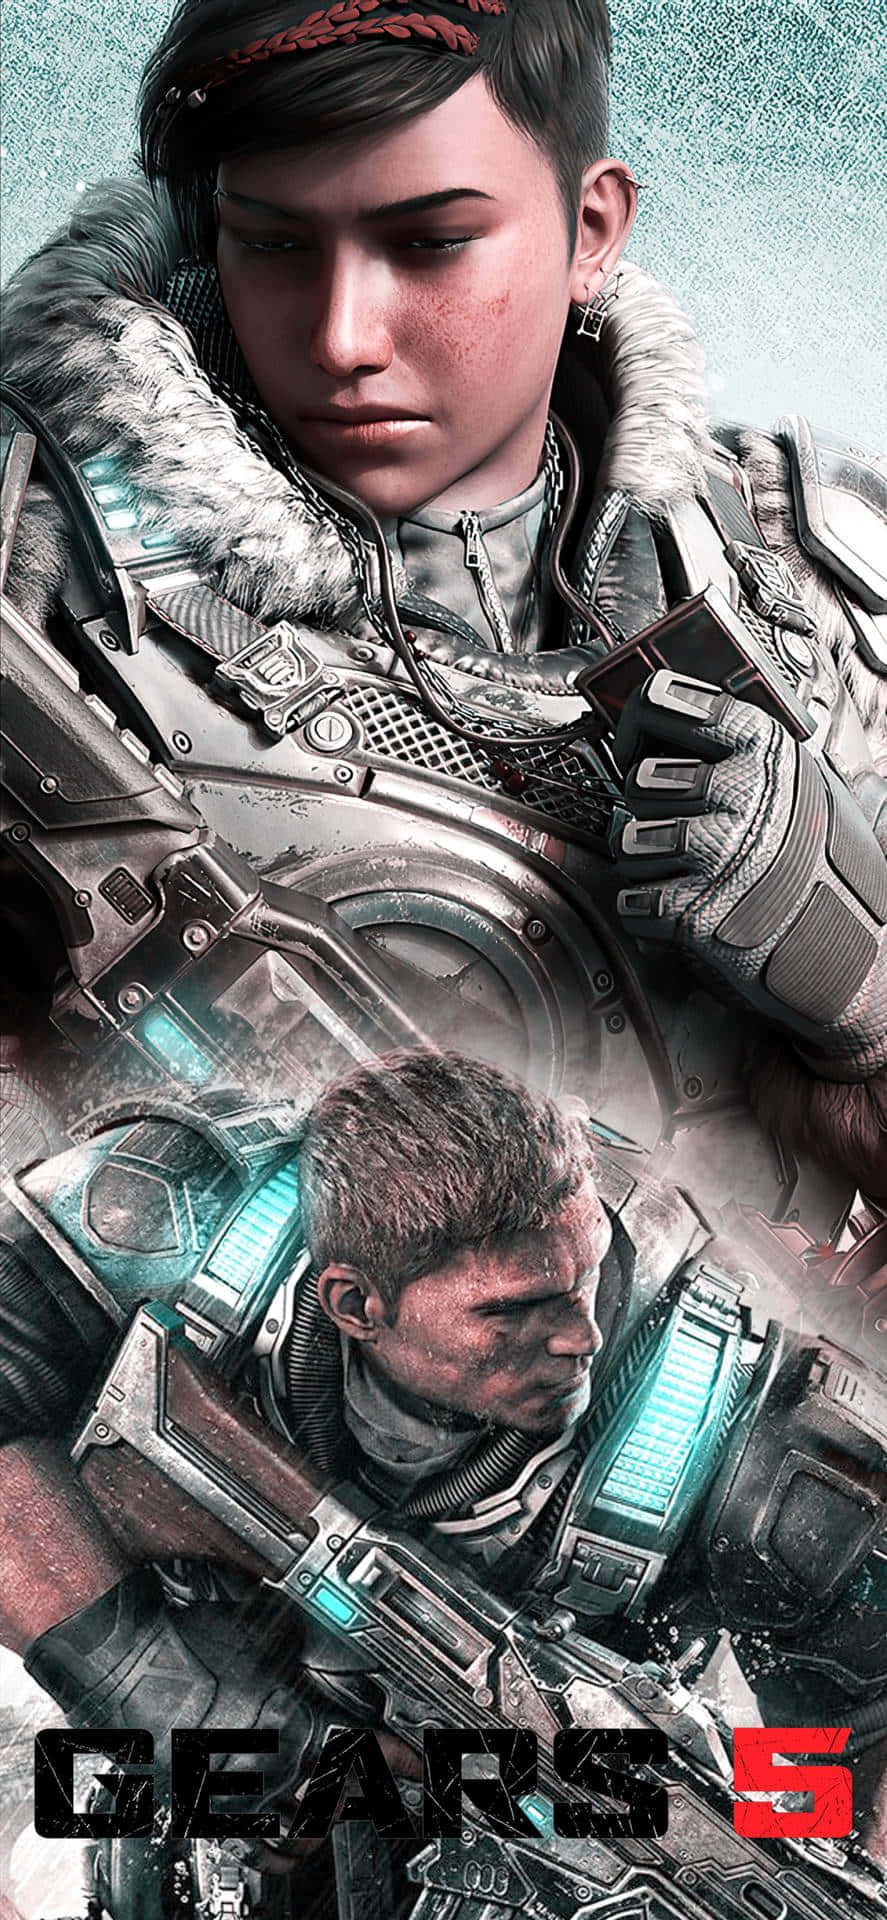 Kreativiphone Xs-bakgrund Med Gears Of War 5-poster.